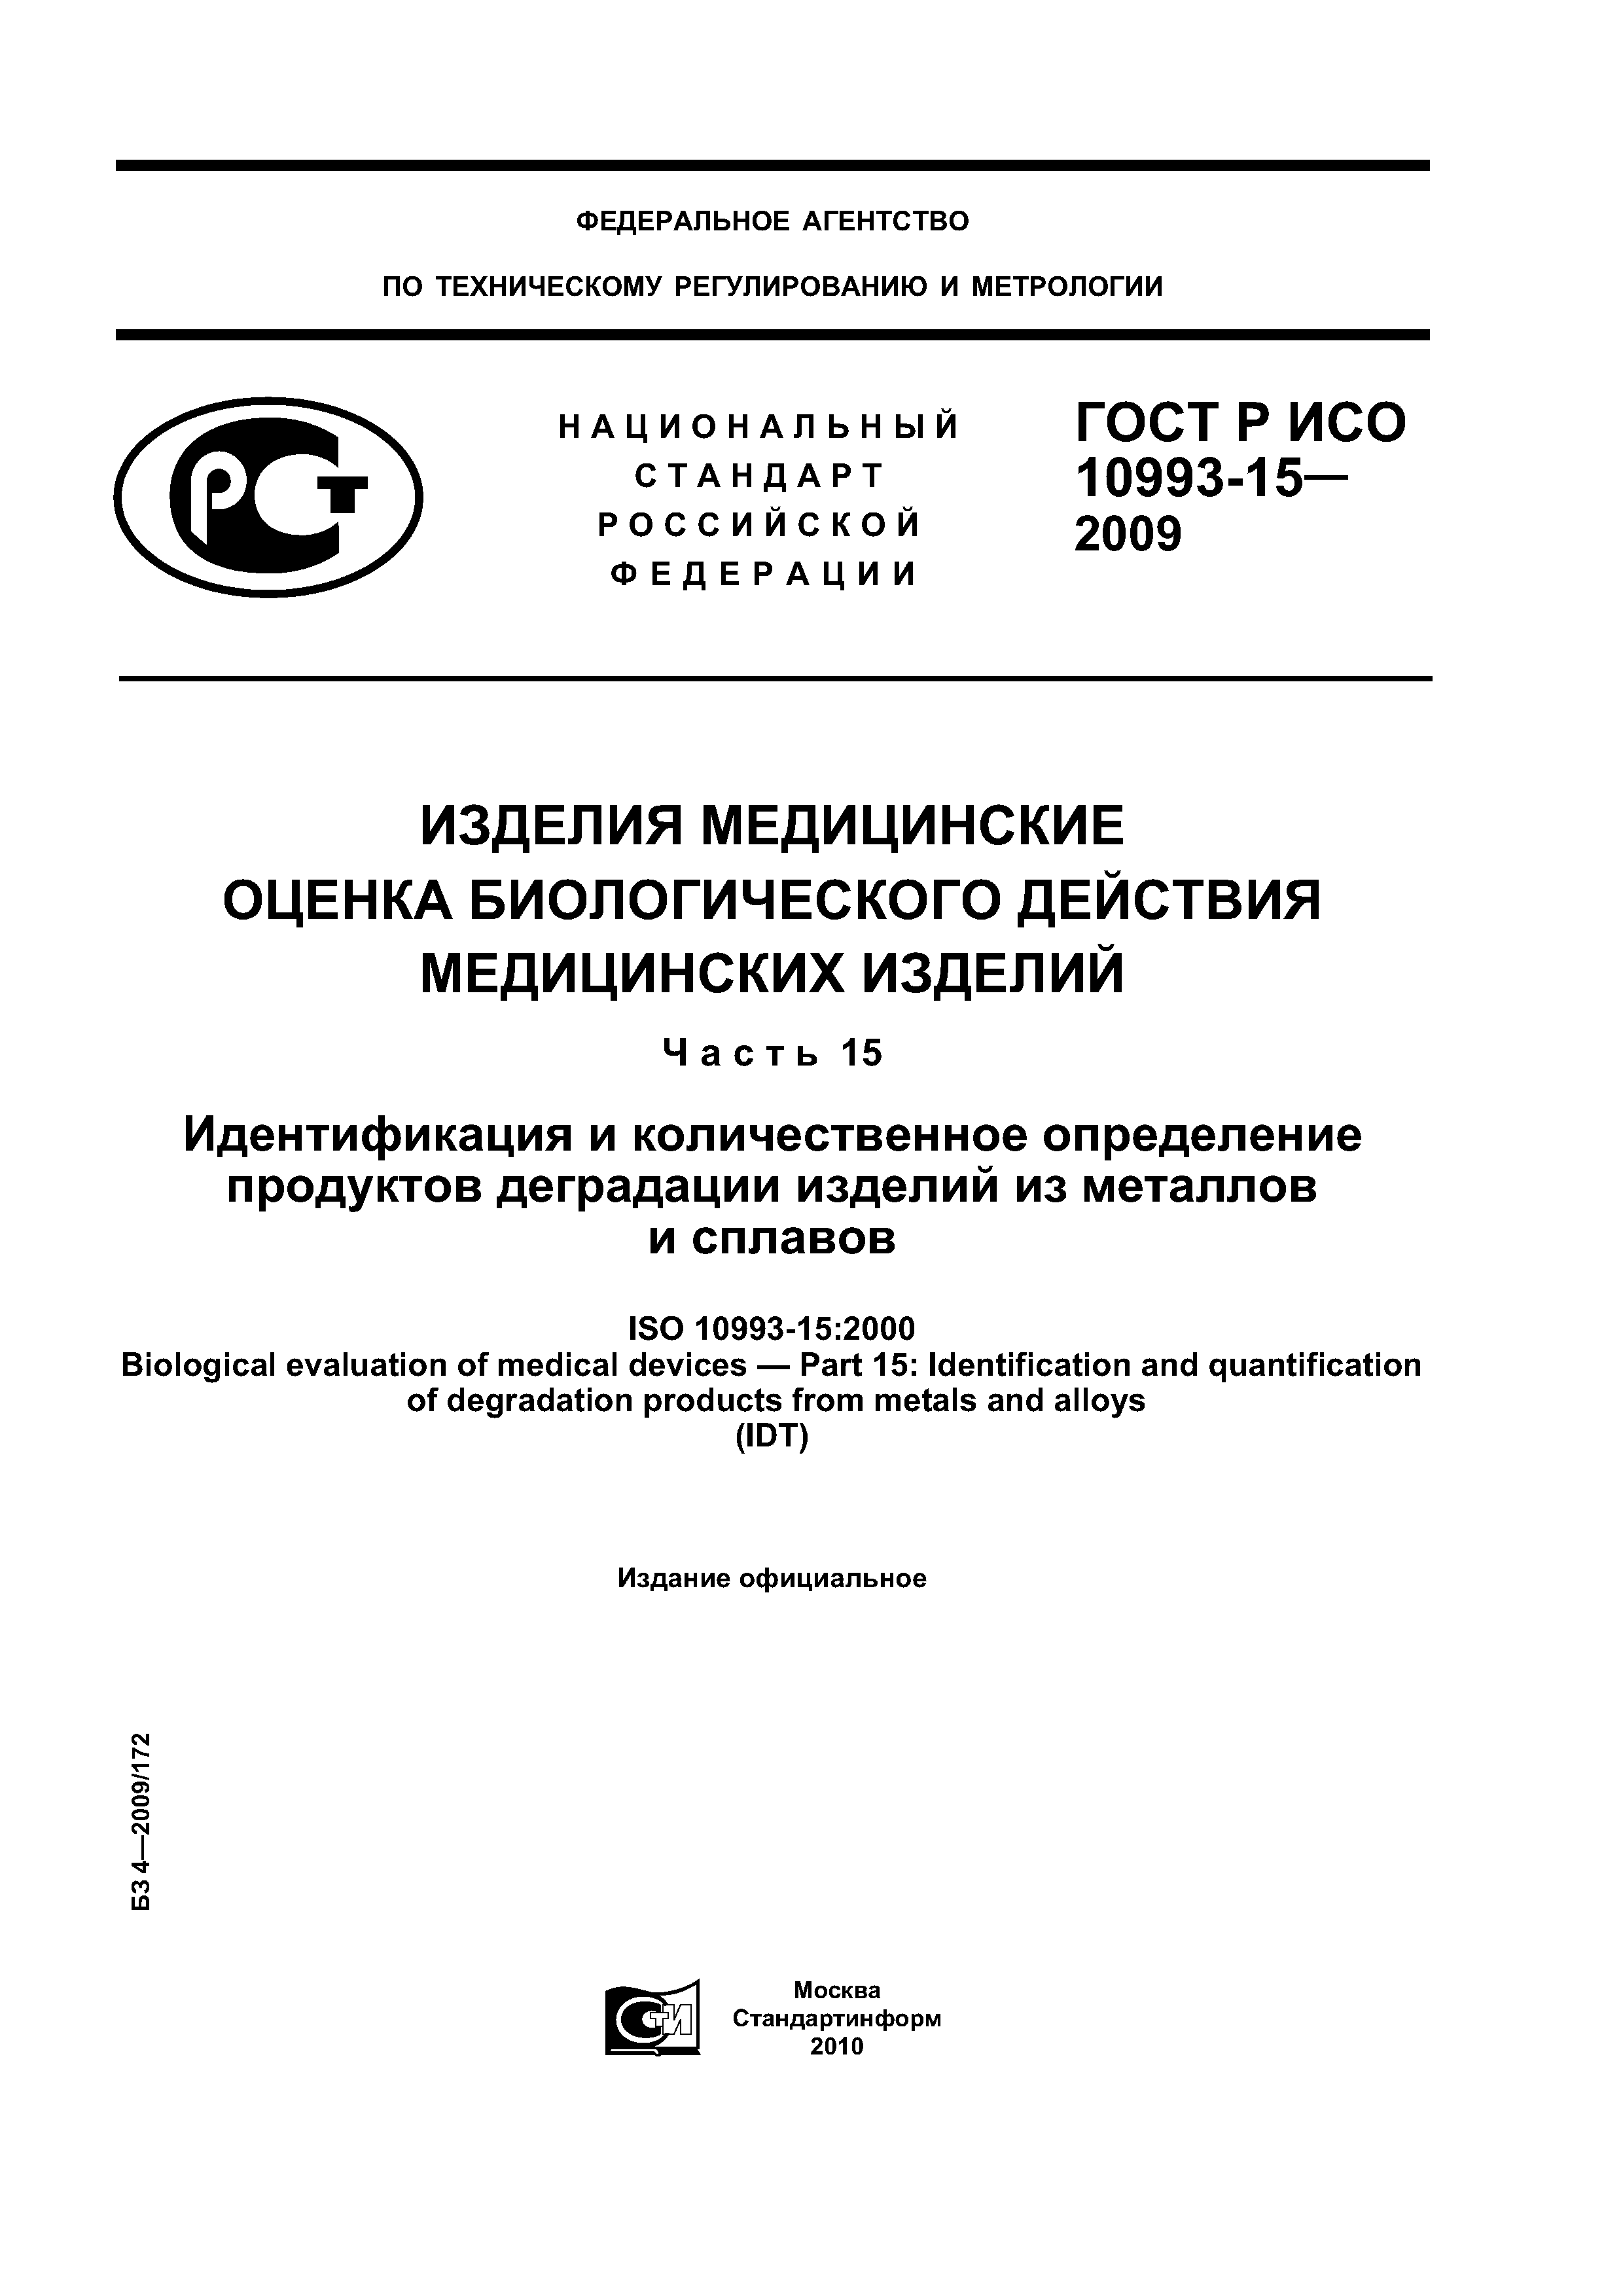 ГОСТ Р ИСО 10993-15-2009